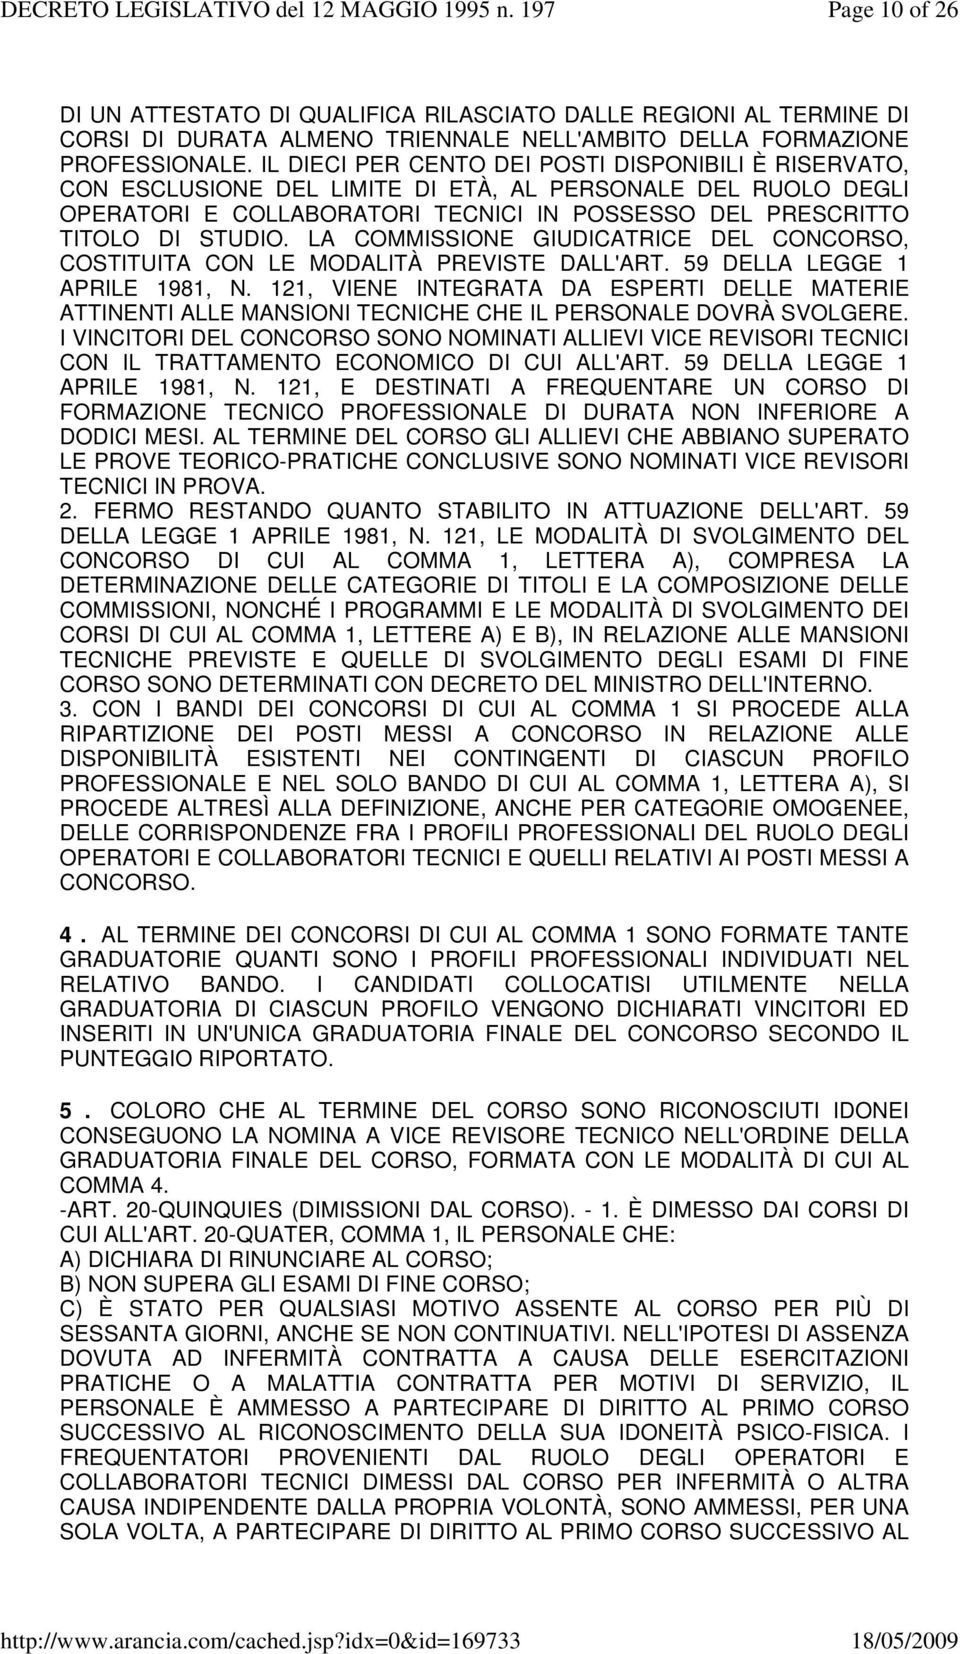 LA COMMISSIONE GIUDICATRICE DEL CONCORSO, COSTITUITA CON LE MODALITÀ PREVISTE DALL'ART. 59 DELLA LEGGE 1 APRILE 1981, N.